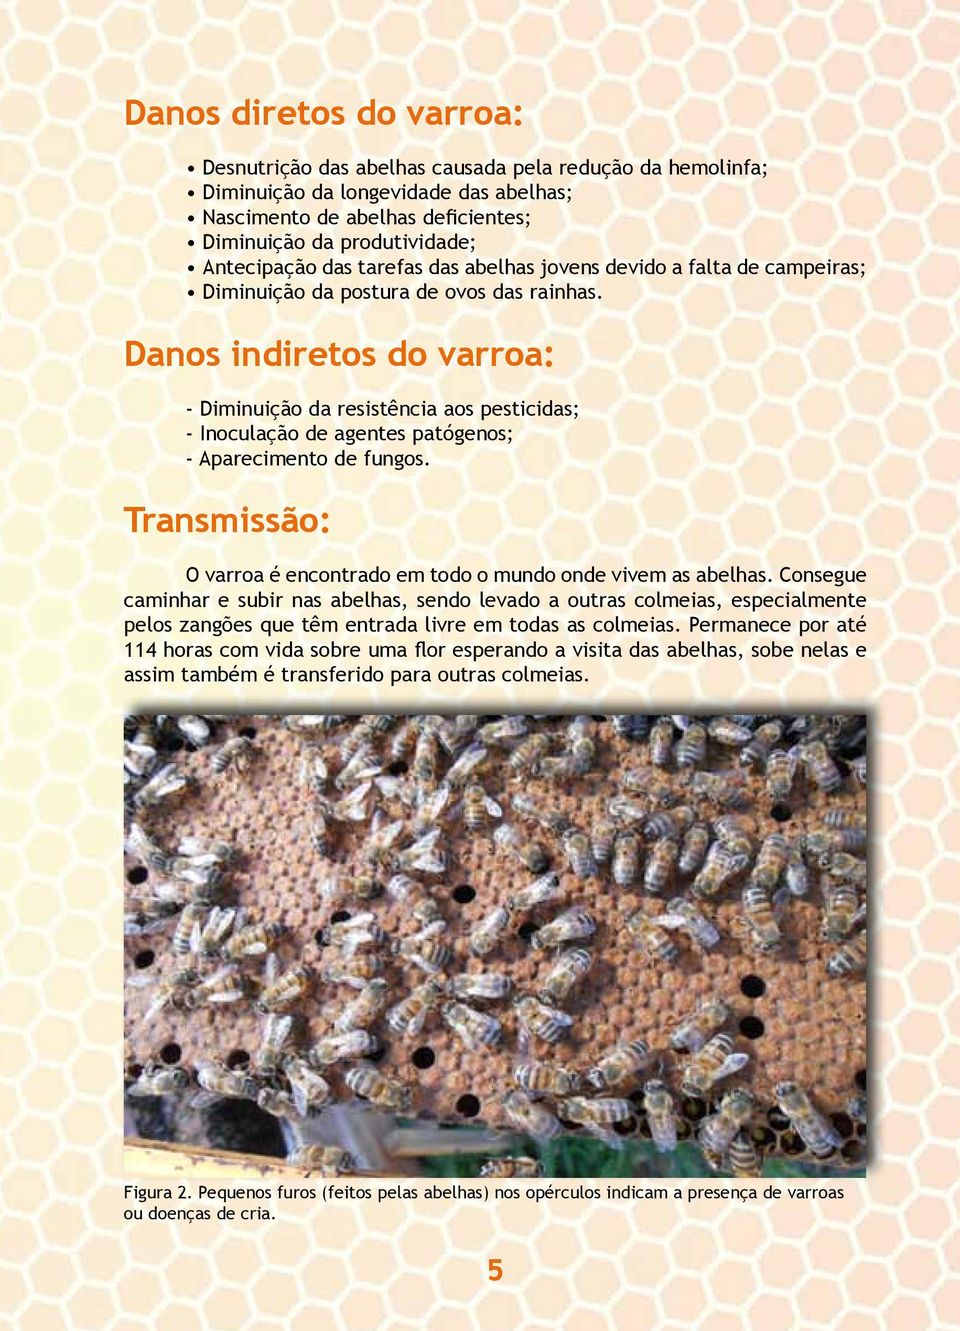 Danos indiretos do varroa: - Diminuição da resistência aos pesticidas; - Inoculação de agentes patógenos; - Aparecimento de fungos.